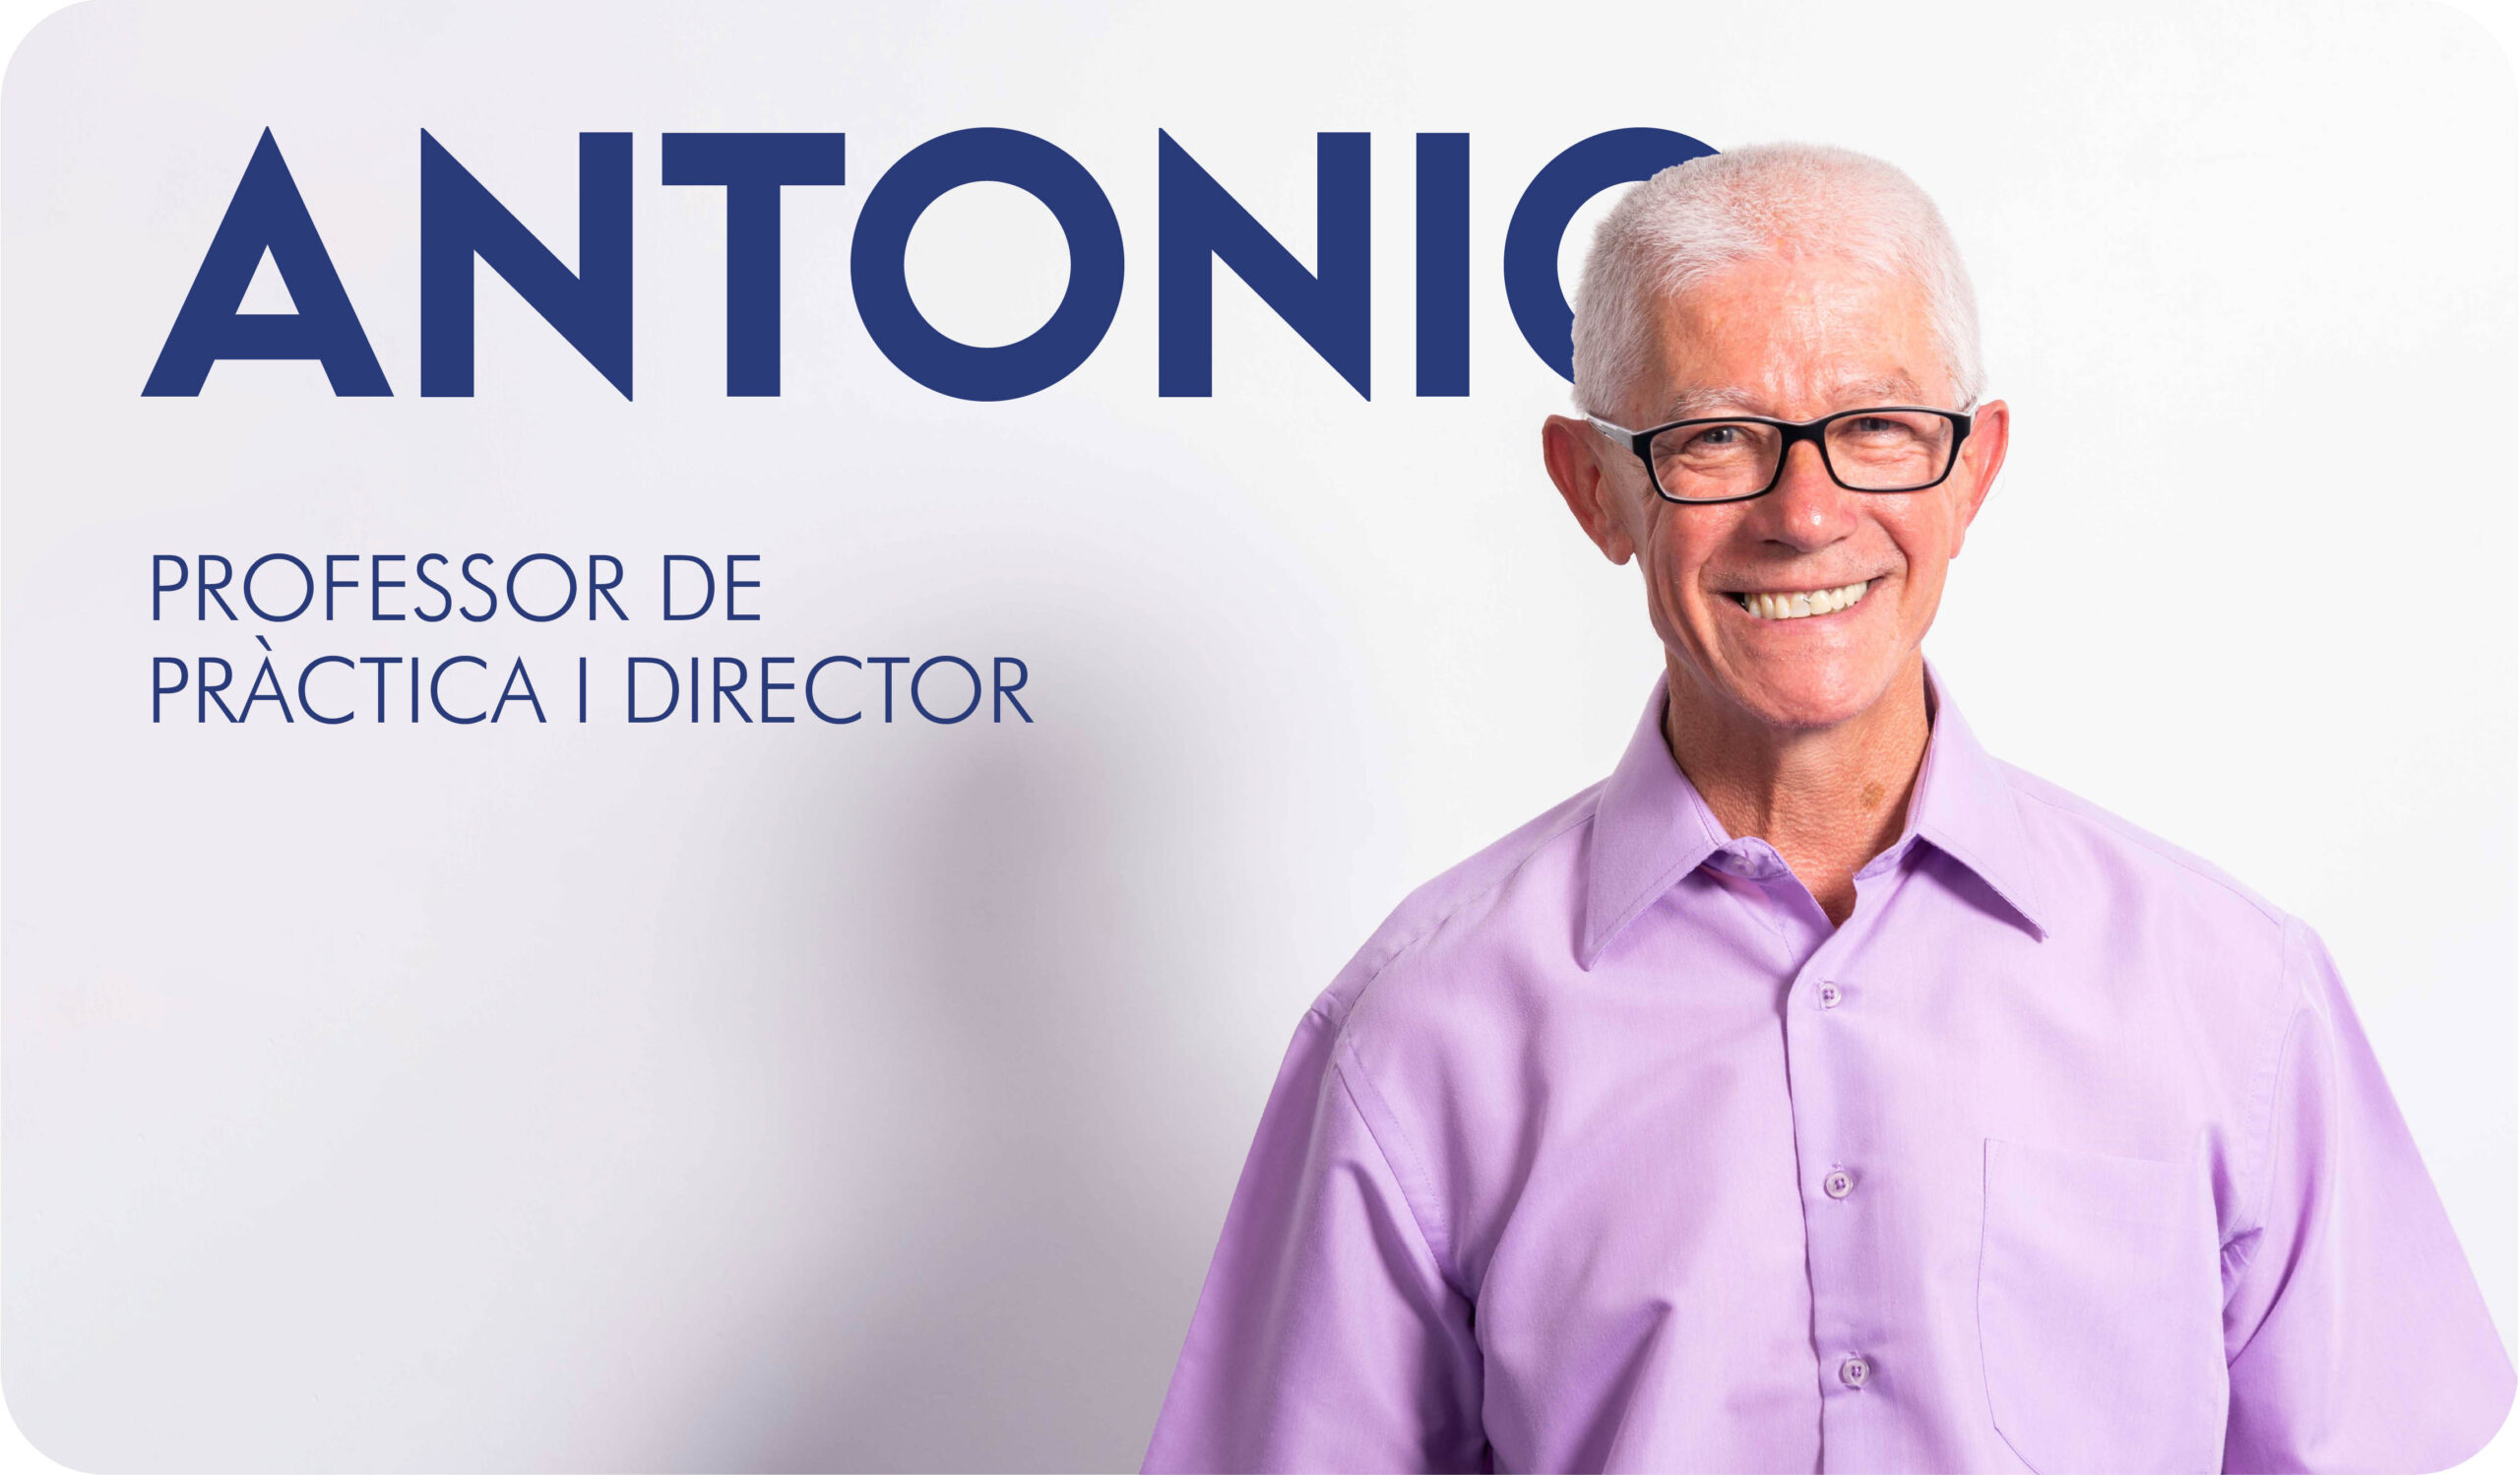 L'Antonio, professor de pràctica i director de l'Autoescola Victor.